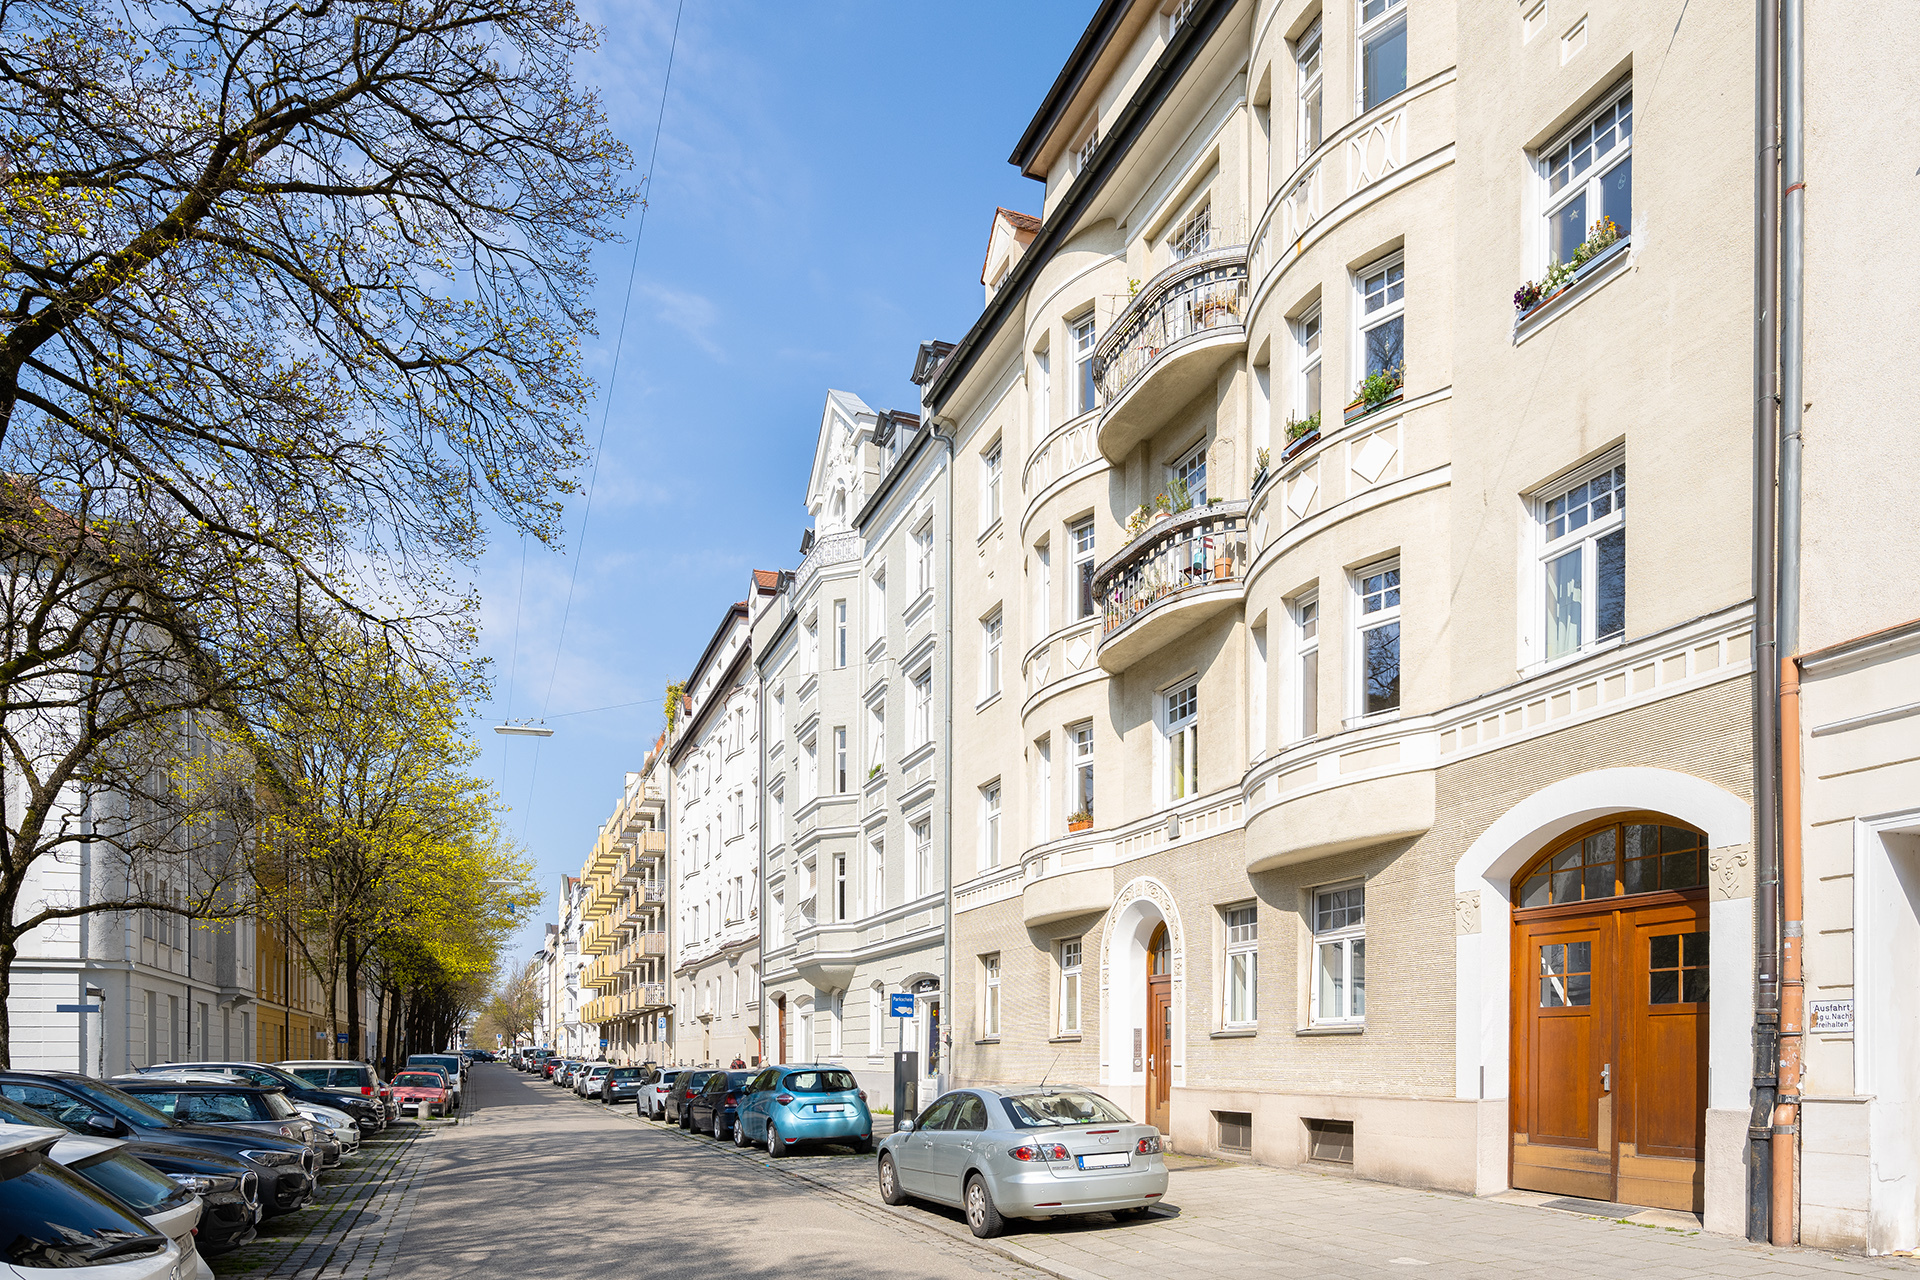 Außergewöhnliche, denkmalgeschützte 3-Zimmer-Wohnung in München-Schwabing - Seitliche Fassadenansicht